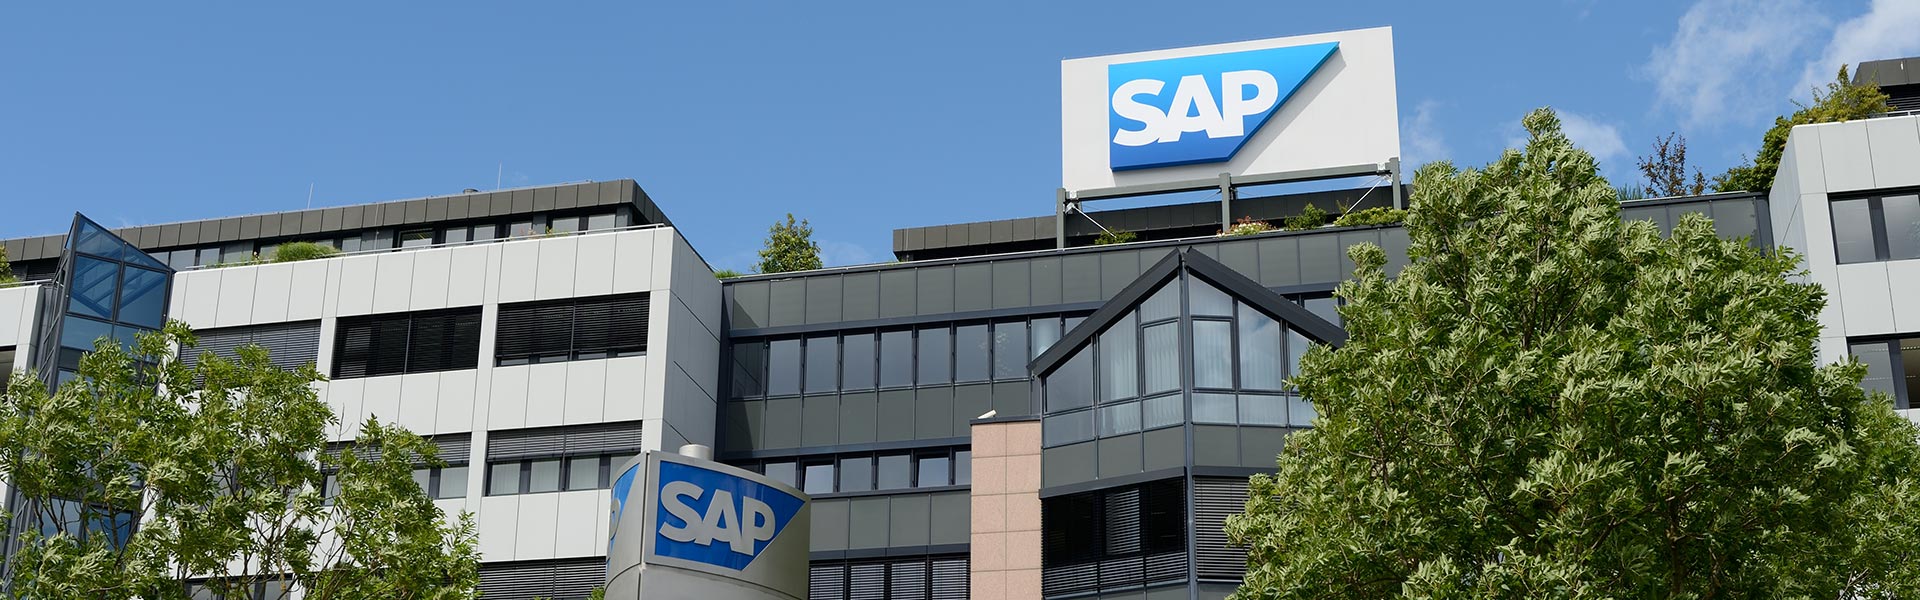 Bradesco e SAP anunciam parceria para desenvolvimento de plataforma de serviços financeiros